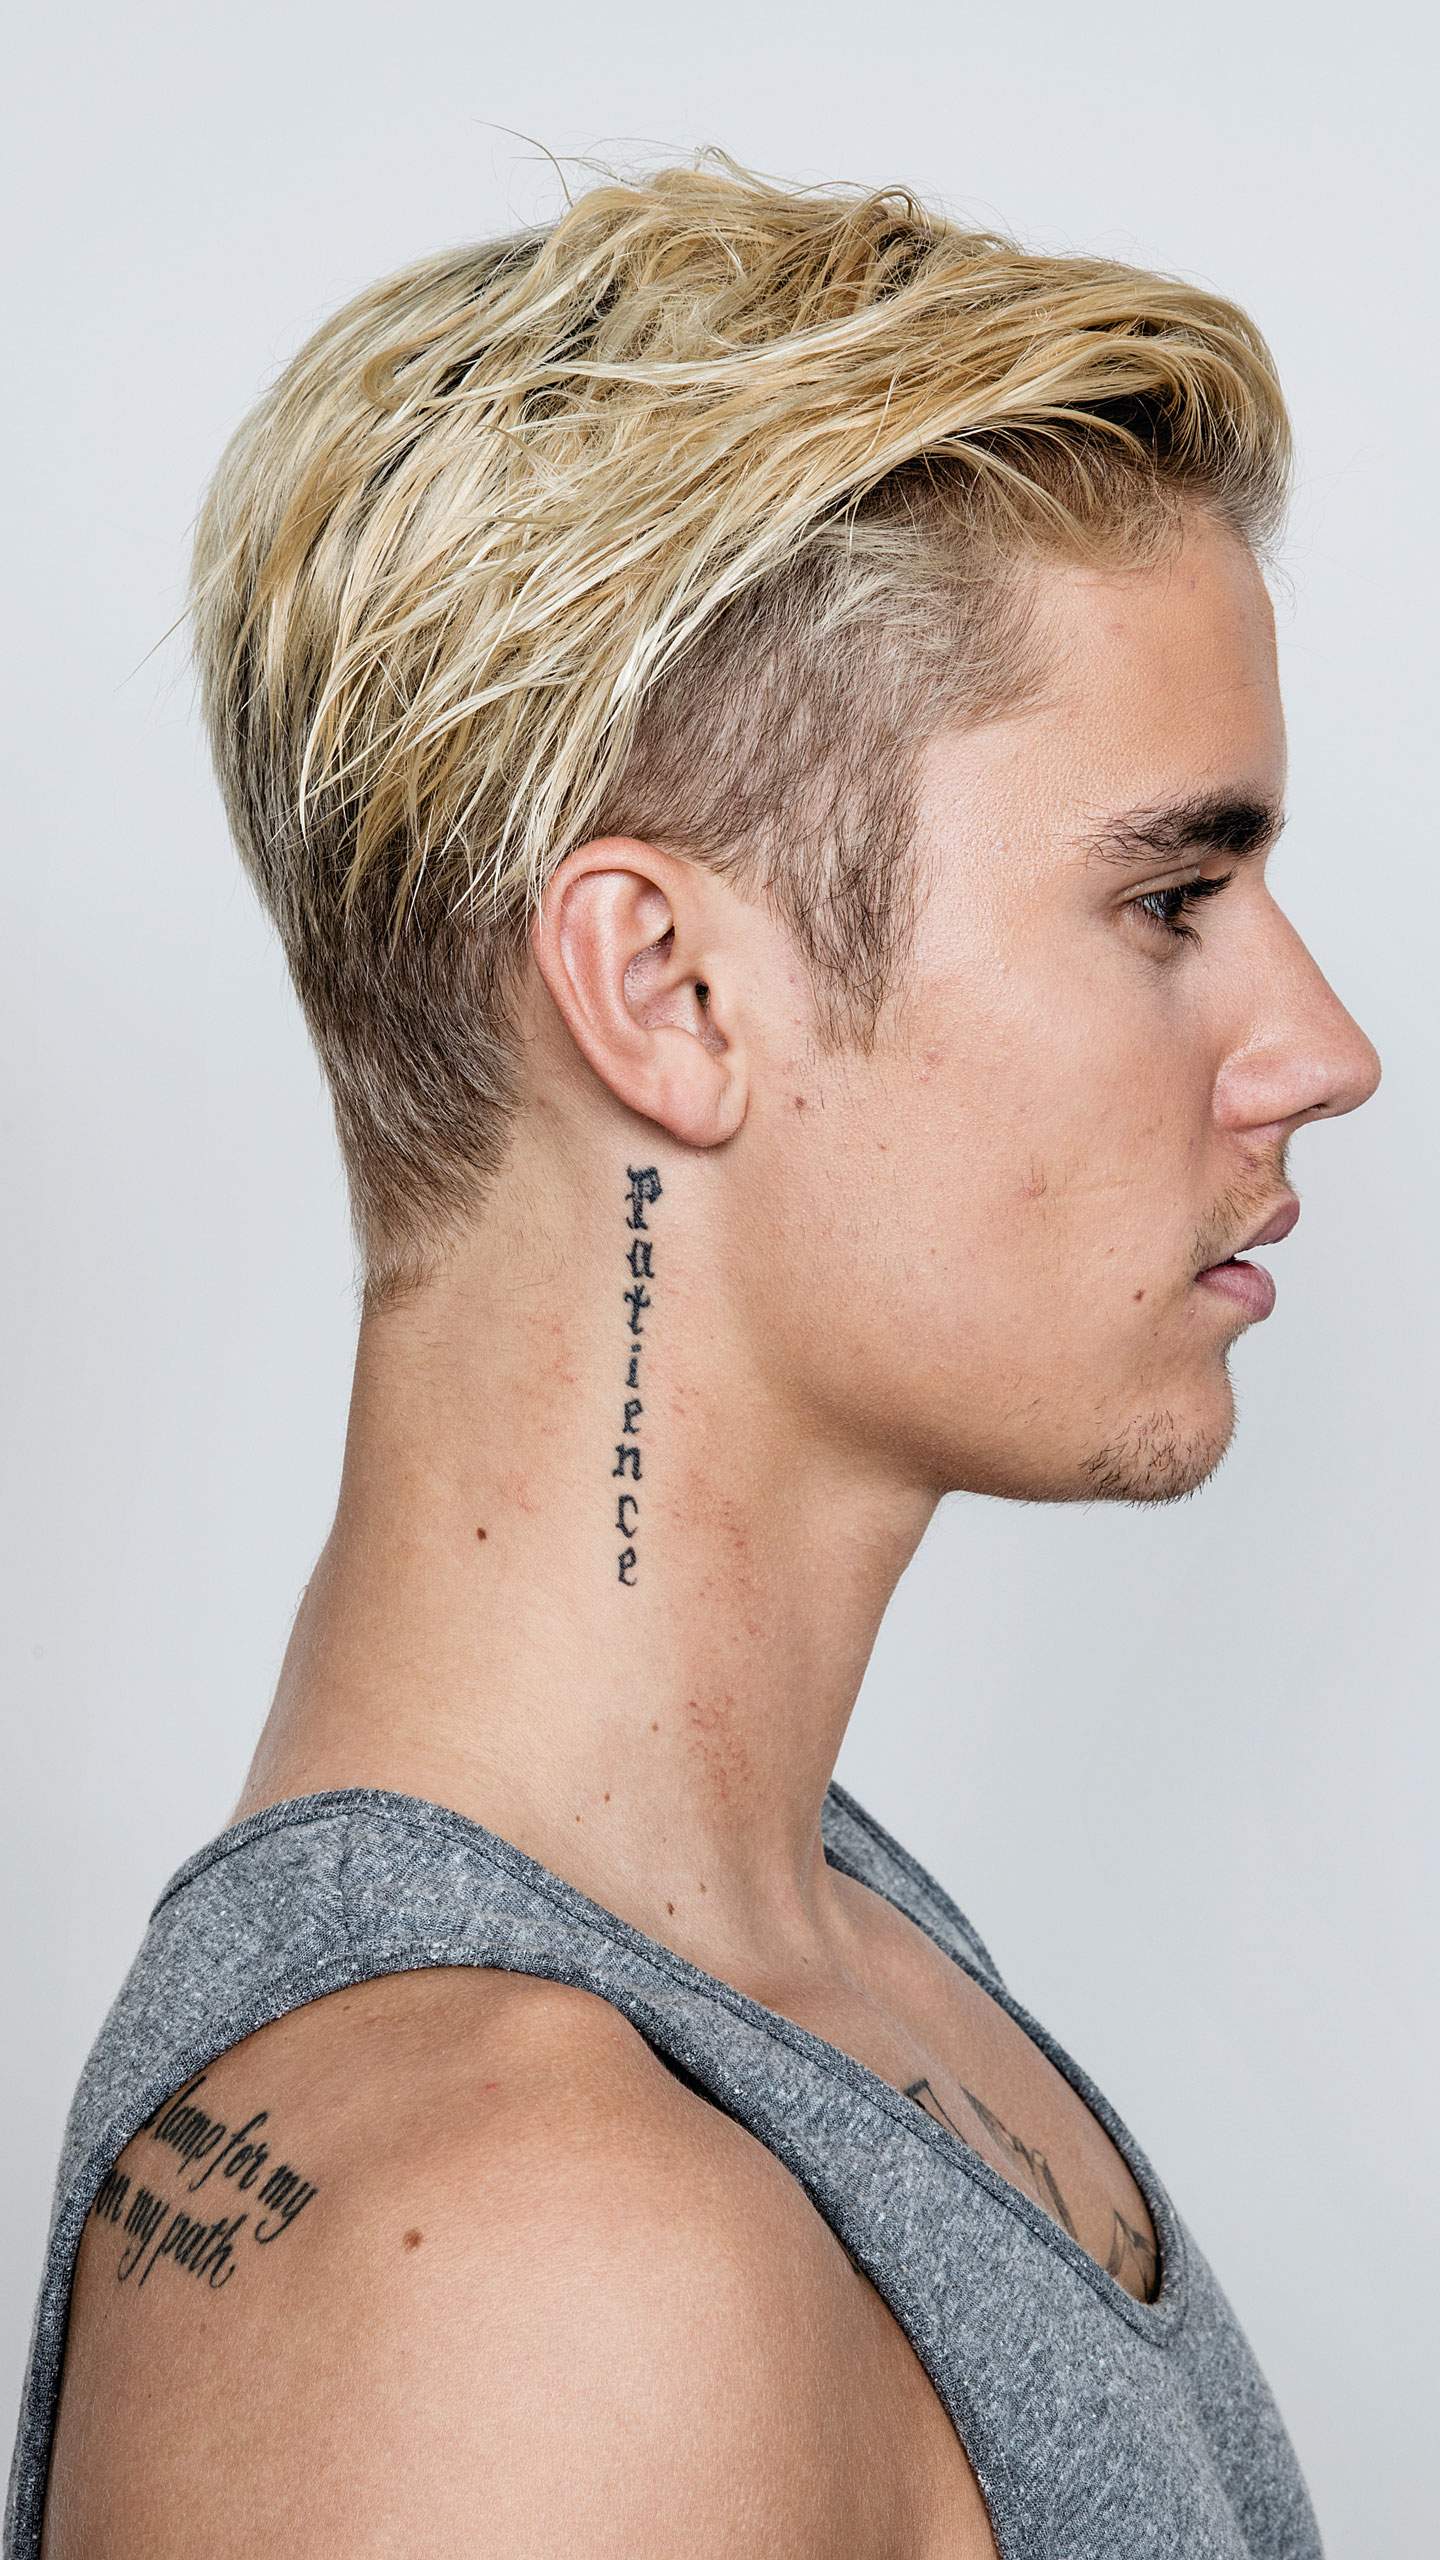 Image - Justin Bieber Telegraph photoshoot.jpg | Justin Bieber Wiki | FANDOM powered ...1440 x 2560